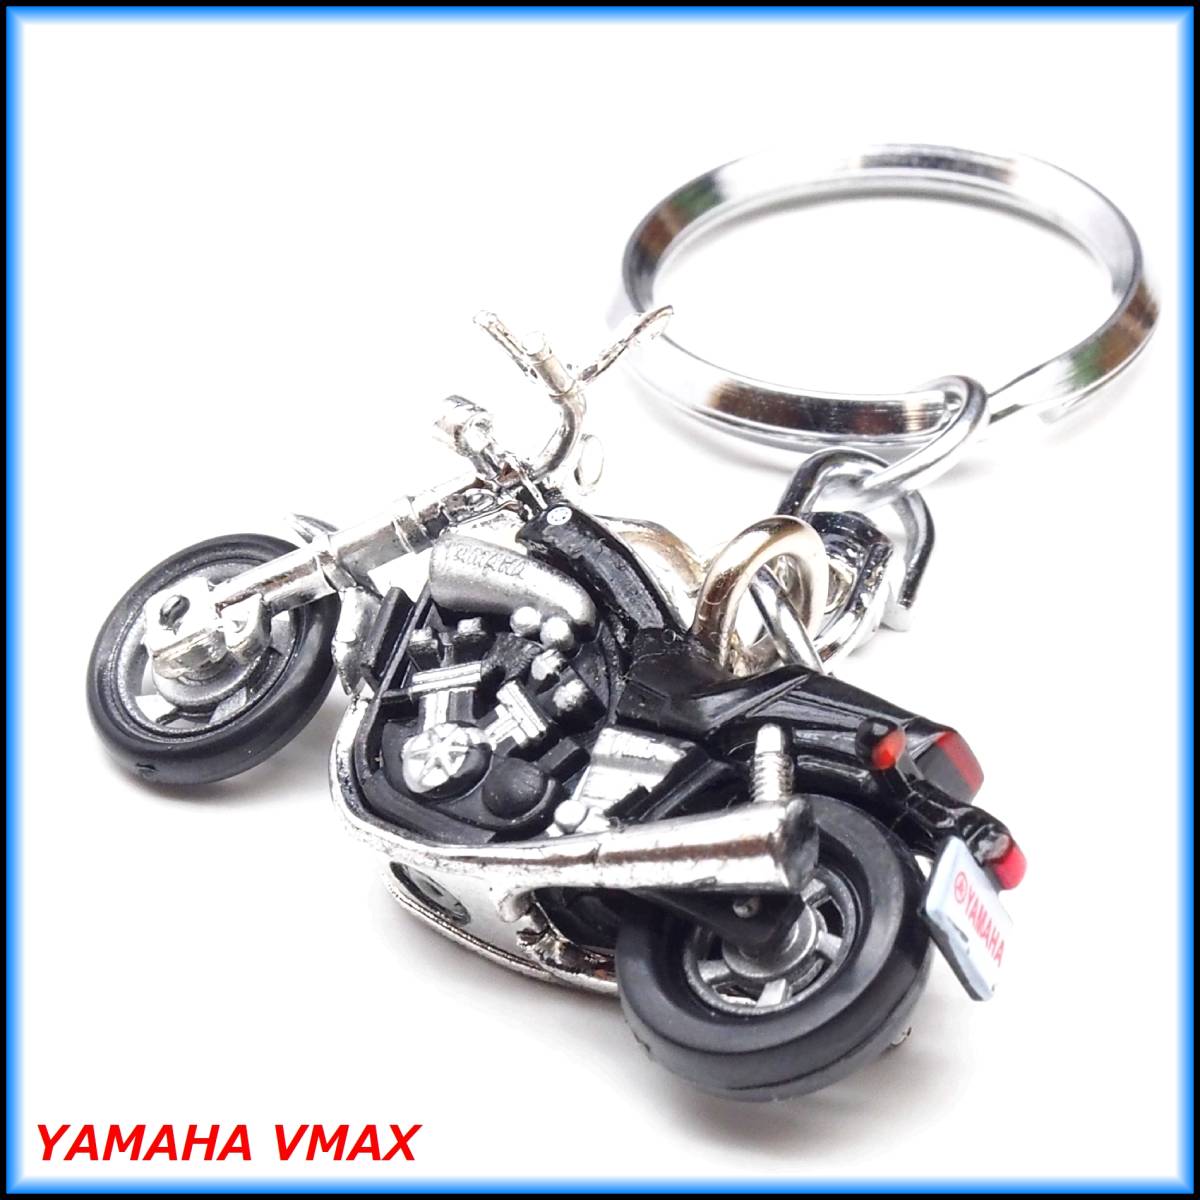 ヤマハ VMAX V-MAX 1200 (1985) バイク ストラップ キーホルダー マフラー ホイール カウル シート サス ショック タンク ミラー ハンドル_画像4